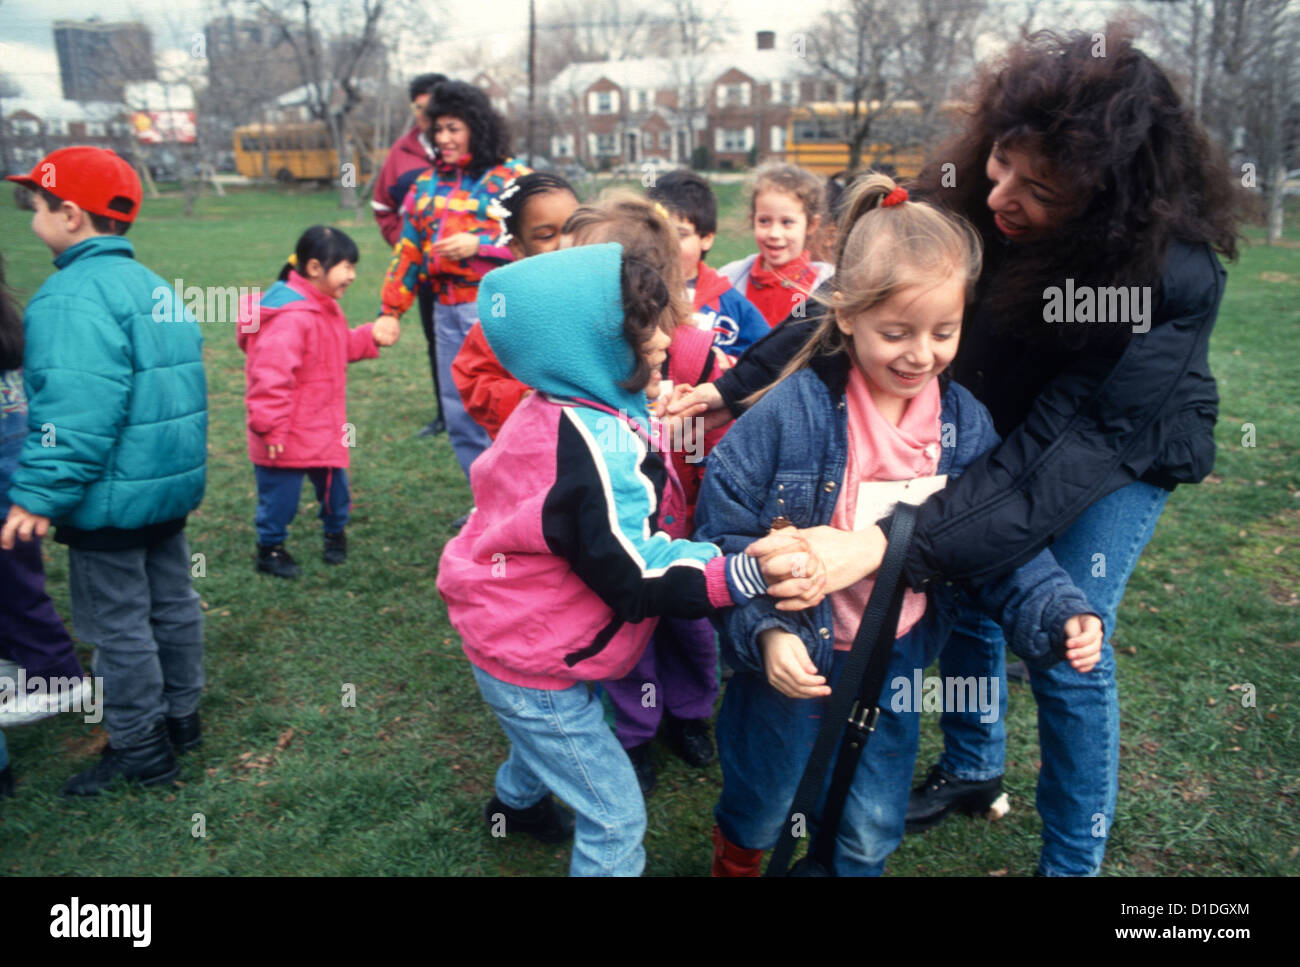 Brooklyn Scuola pubica kindergarten avente classe di divertimento nel parco su una gita. Foto Stock